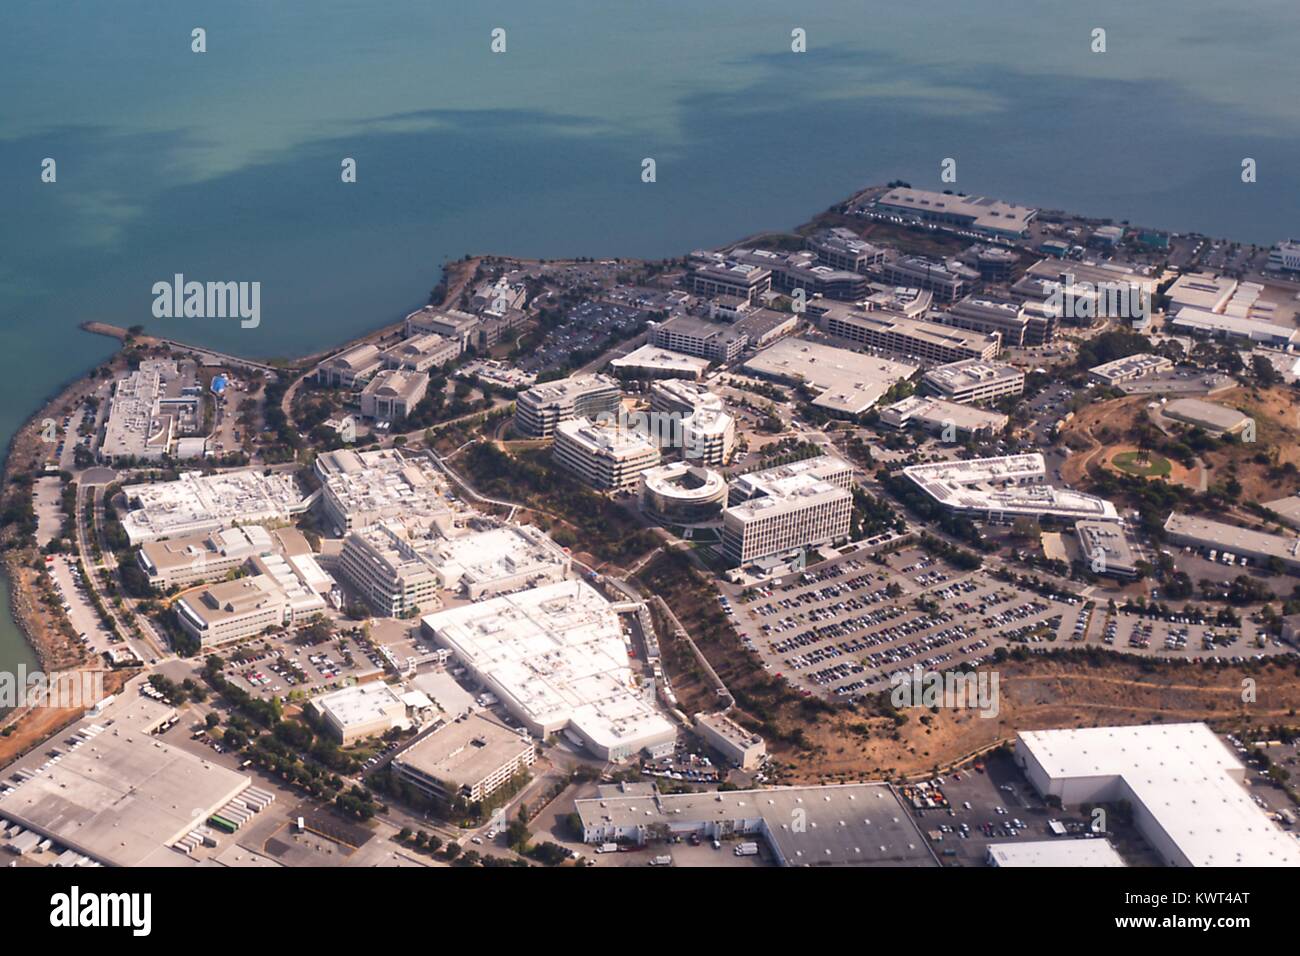 Vista aerea del campus e sede di bio-farmaceutica Genentech, nella parte sud di San Francisco, California, 13 settembre 2017. Foto Stock